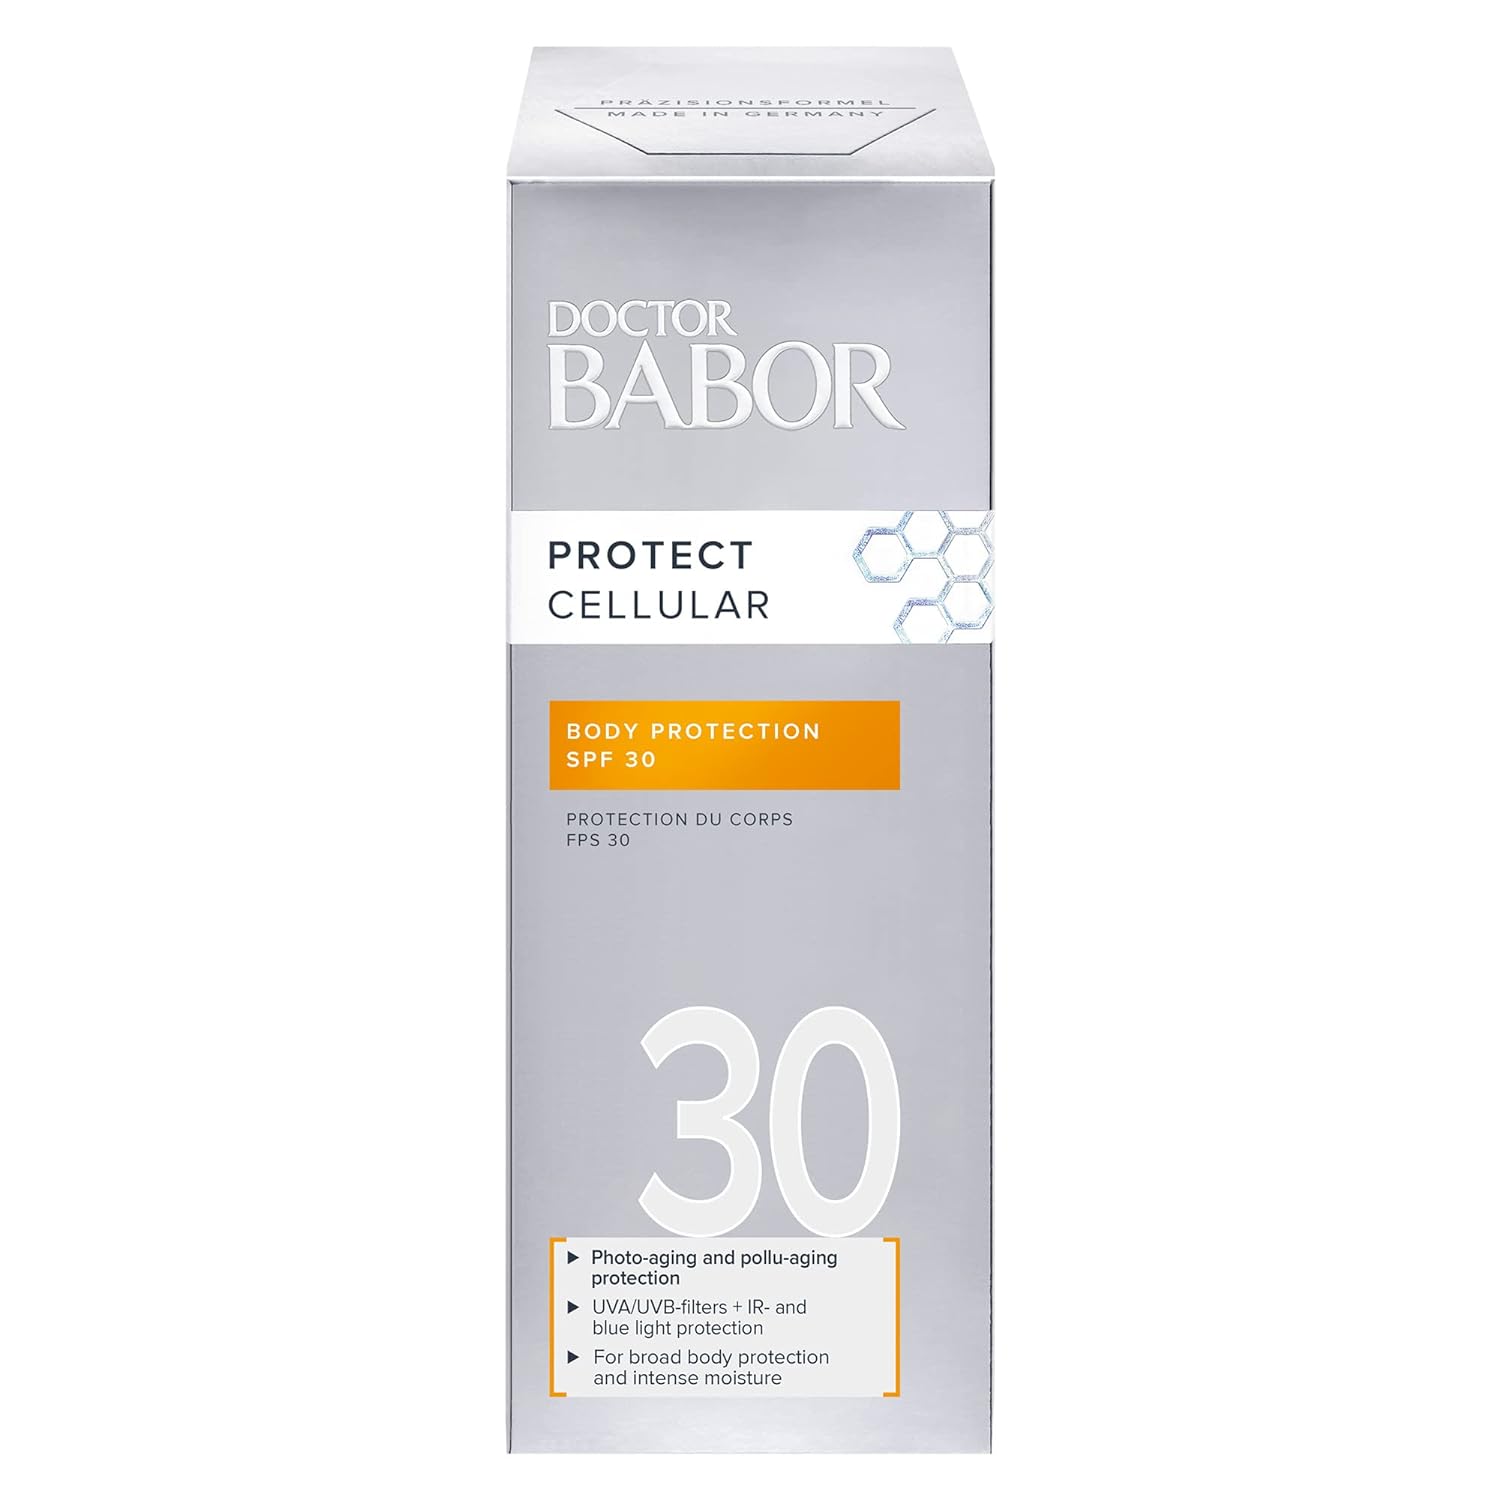 Сонцезахисний зволожуючий флюїд для тіла Babor Doctor Babor Protect Cellular Body Protection SPF 30 150 мл - фото 2